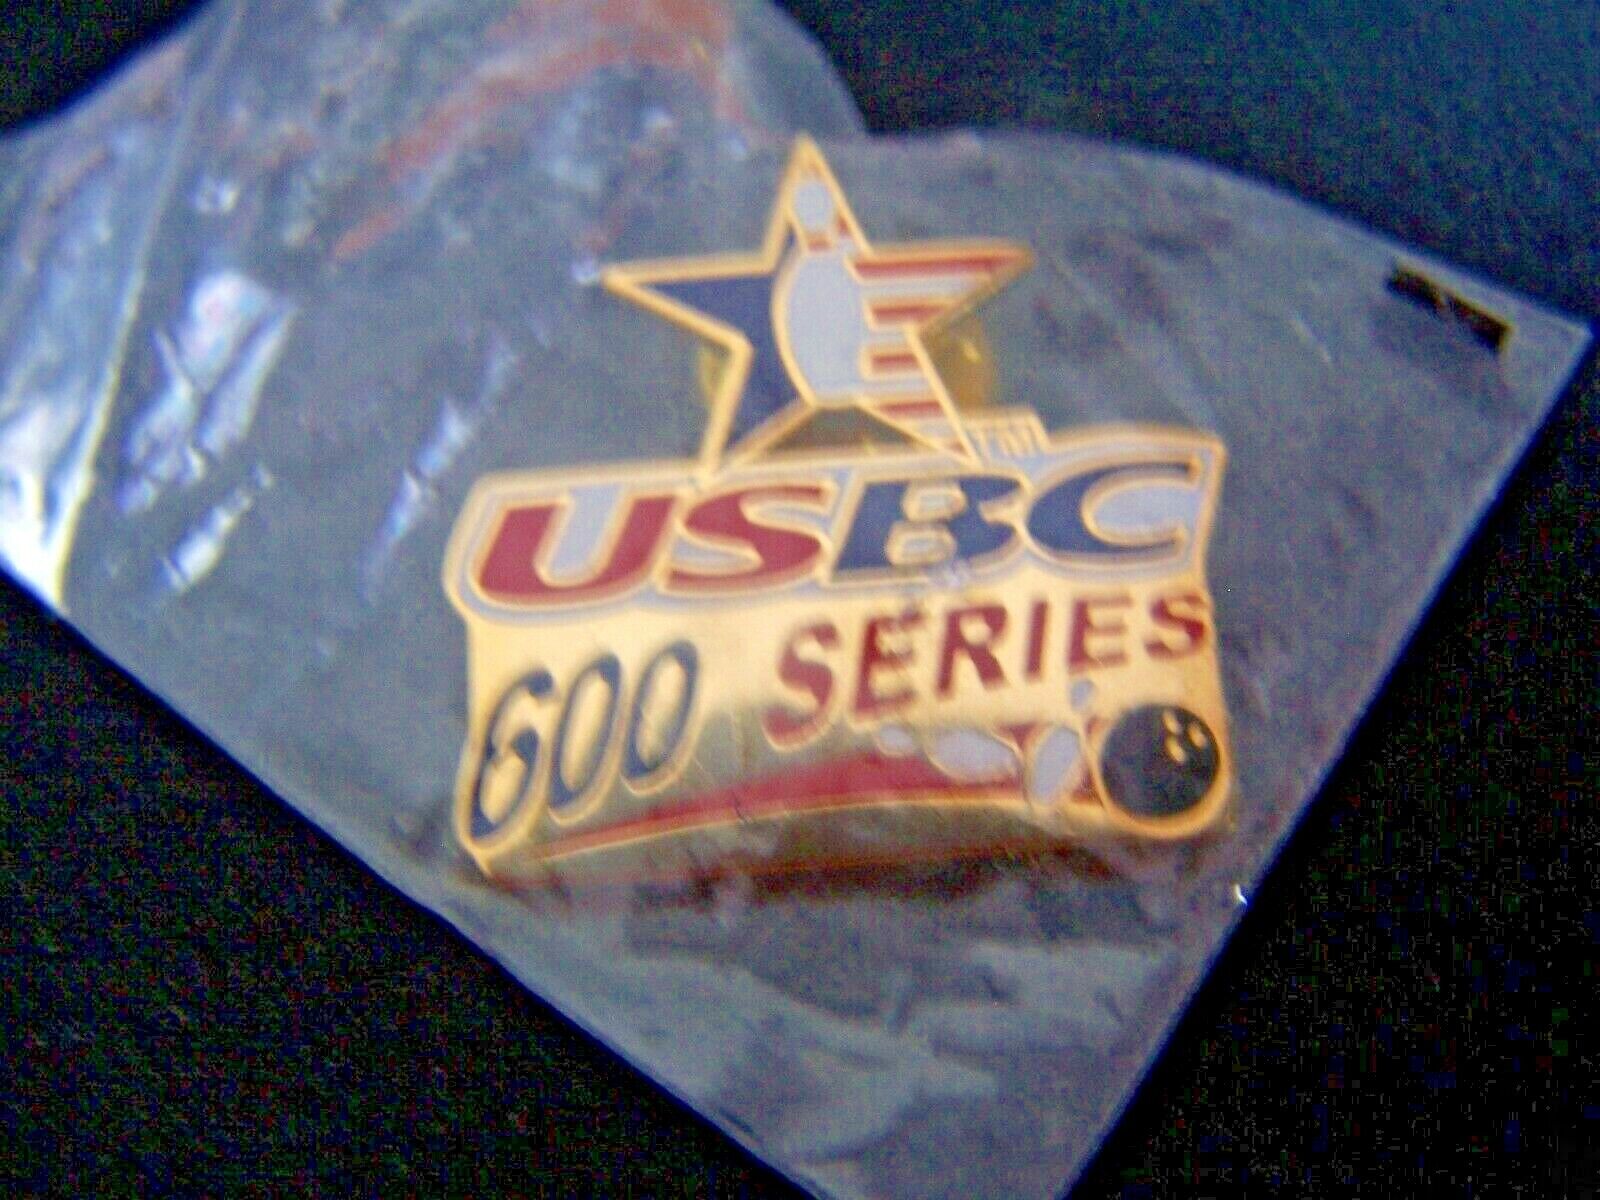 USBC 600 Series Bowling Award Lapel Pin NIP